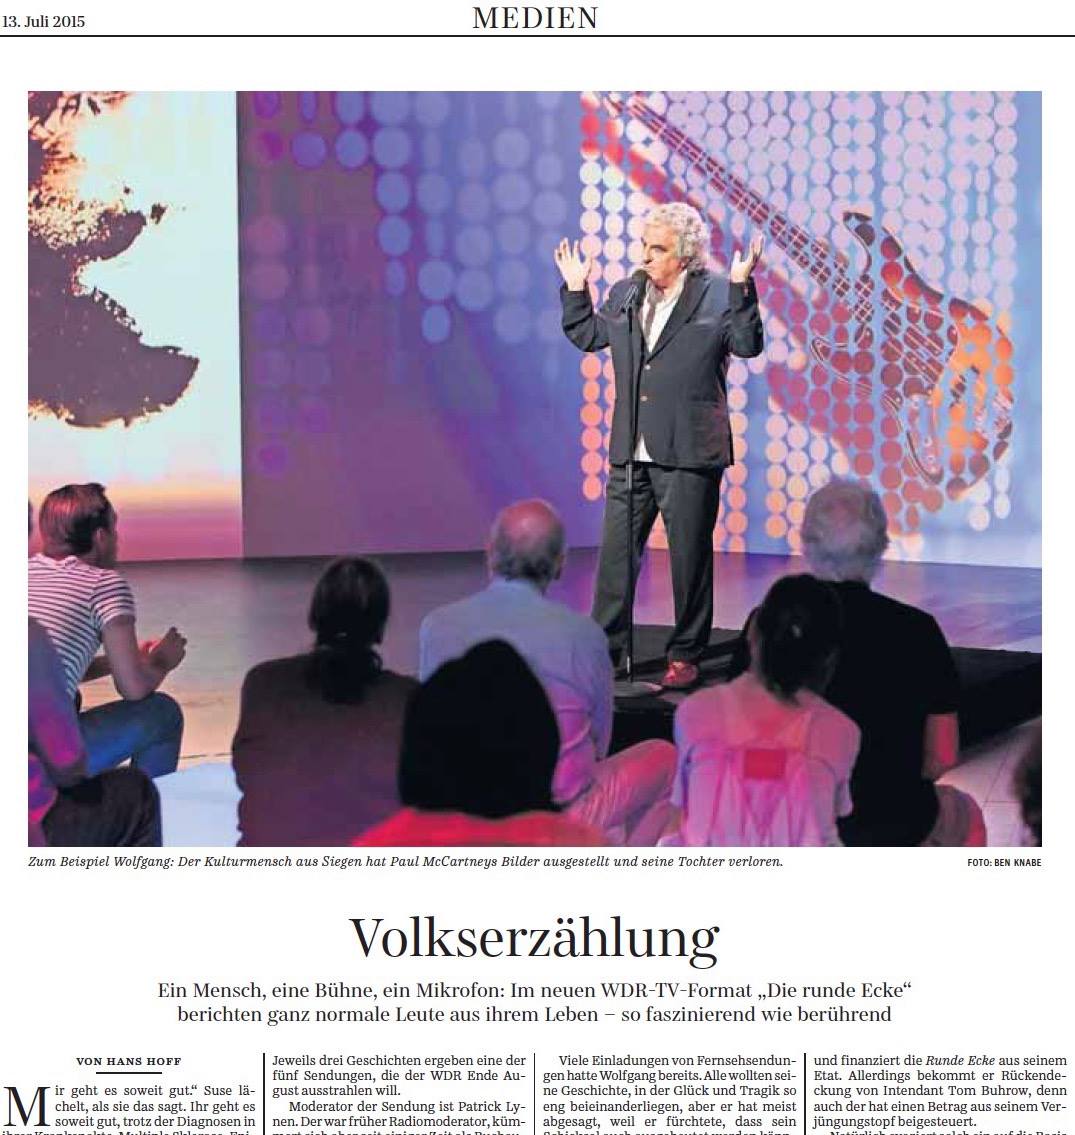 Die Runde Ecke in der Süddeutschen Zeitung am 13. Juli 2015